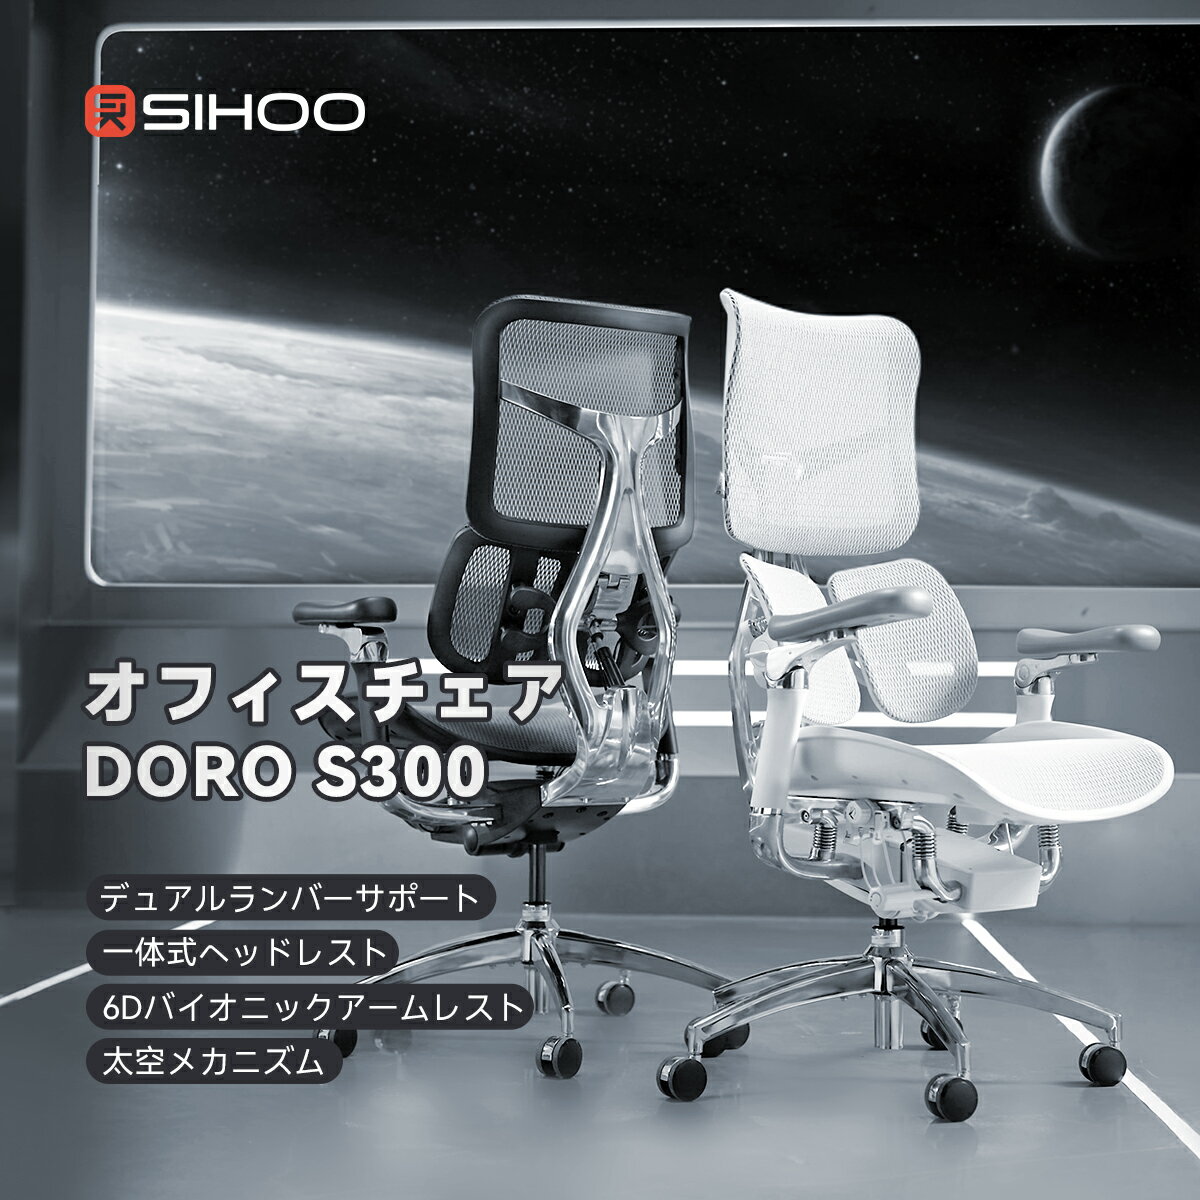 【送料無料】【独創太空メカニズム】SIHOO DORO S300 オフィスチェア デュアルランバーサポート 高機能チェア 6D連携アームレスト デスクチェア 一体式ヘッドレスト ワークチェア ショック・ア…